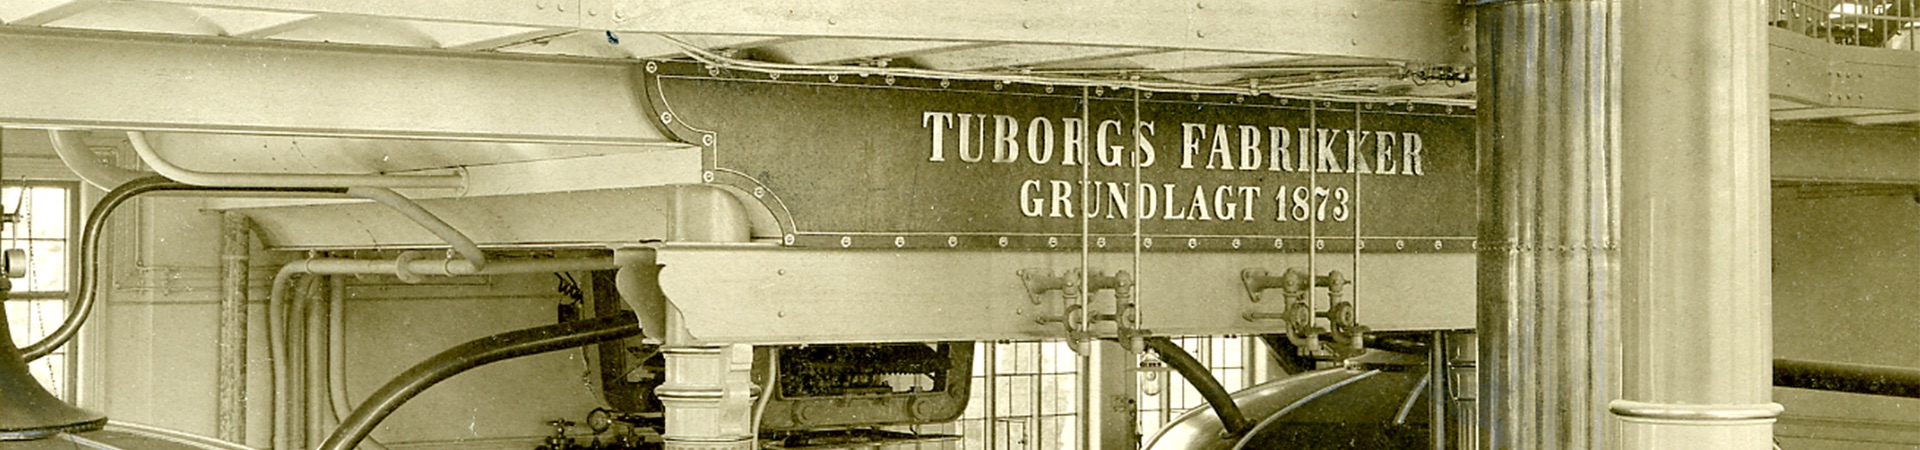 prostorije Tuborg pivare 1953. godine